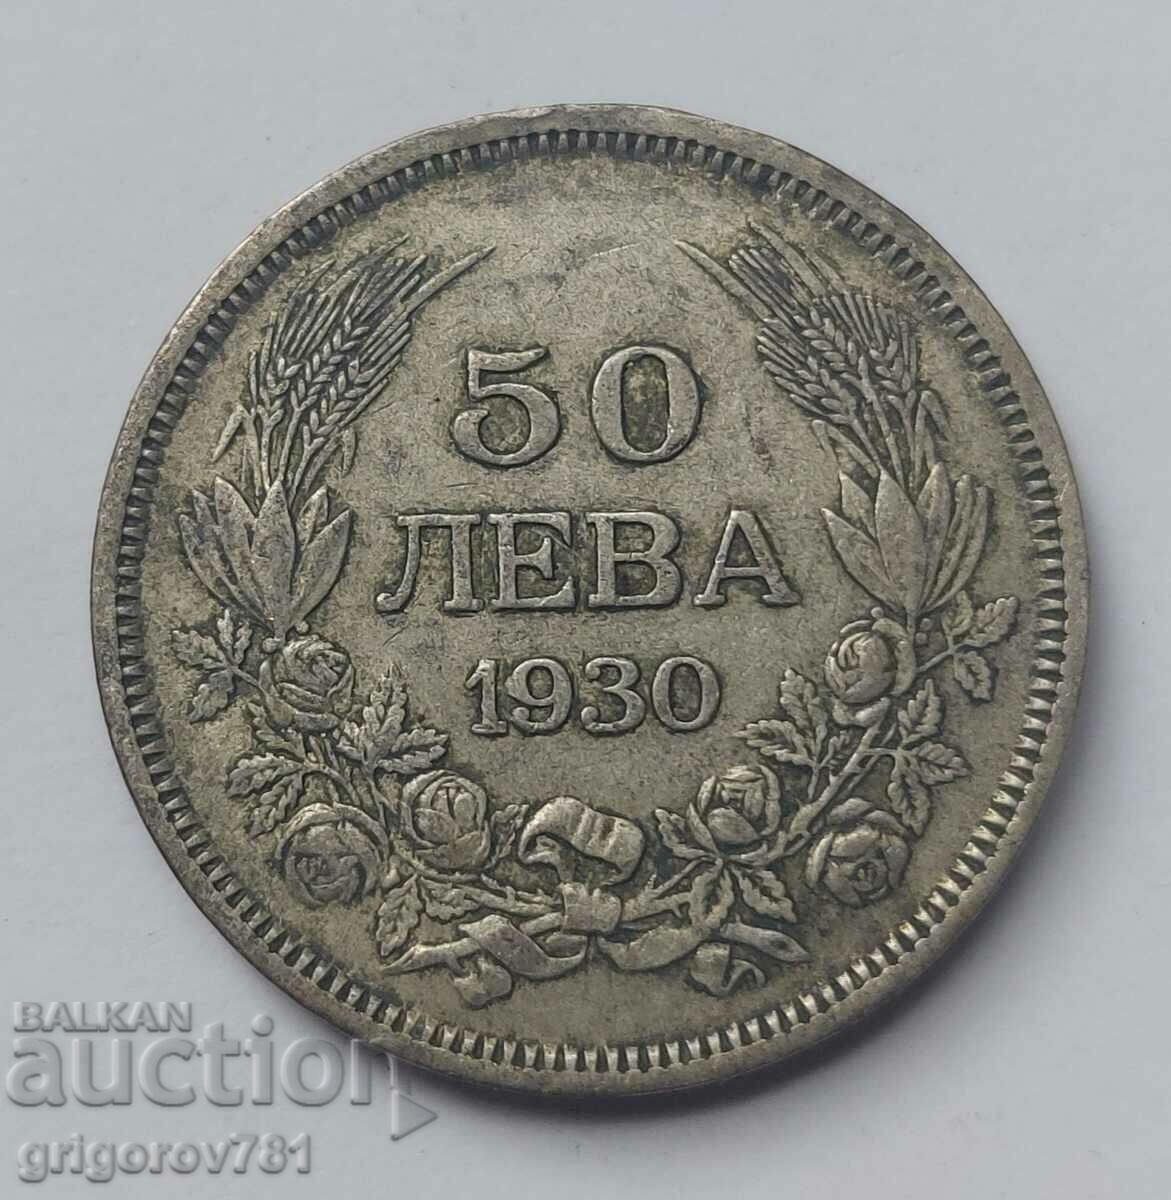 50 leva silver Bulgaria 1930 - silver coin #39